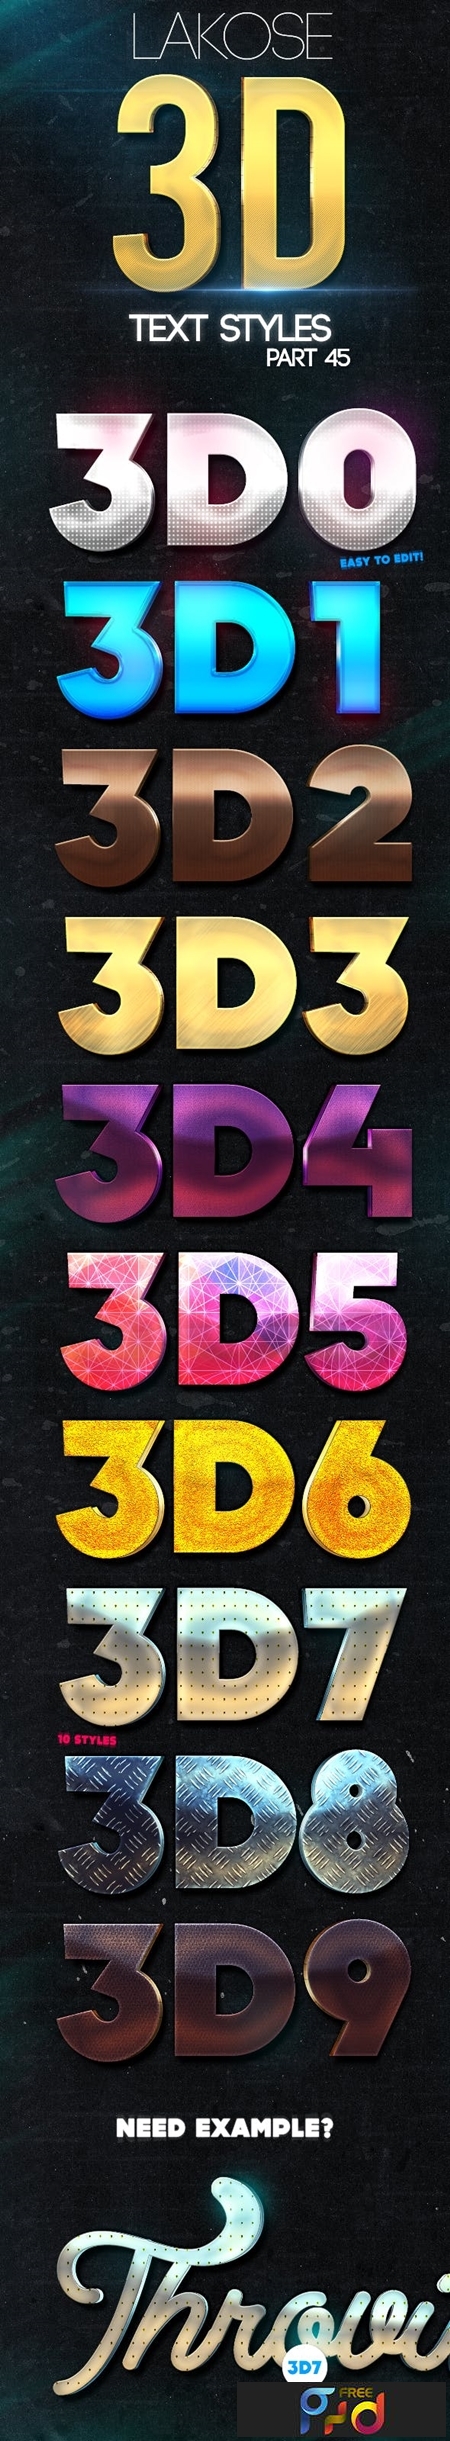 Lakose 3D Text Styles Part 45